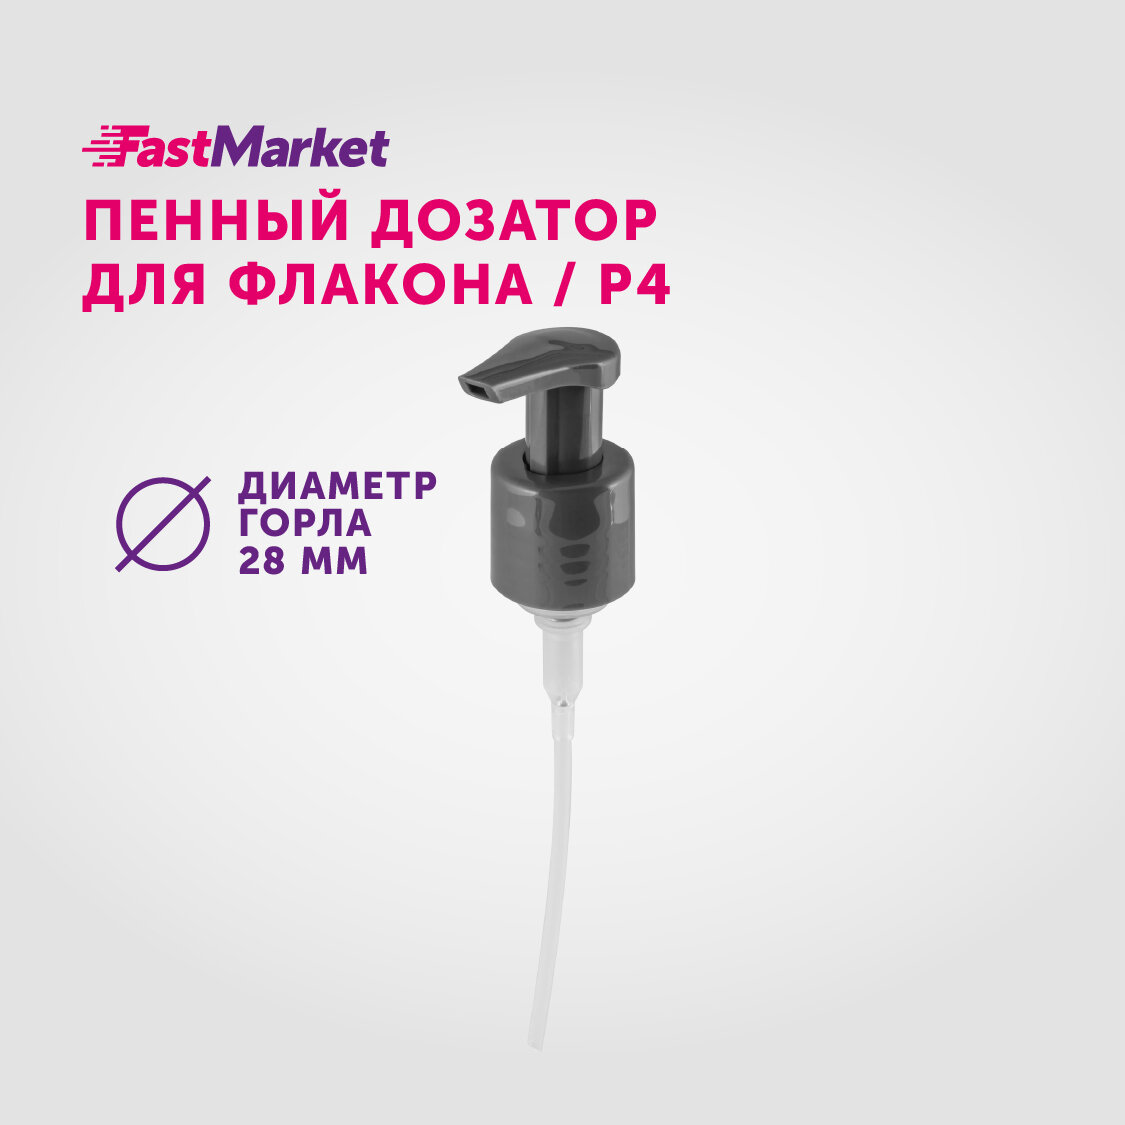 Сменный дозатор косметический для мыла пенки, насосная помпа для флакона, FastMarket, диаметр 28 мм, цвет серый